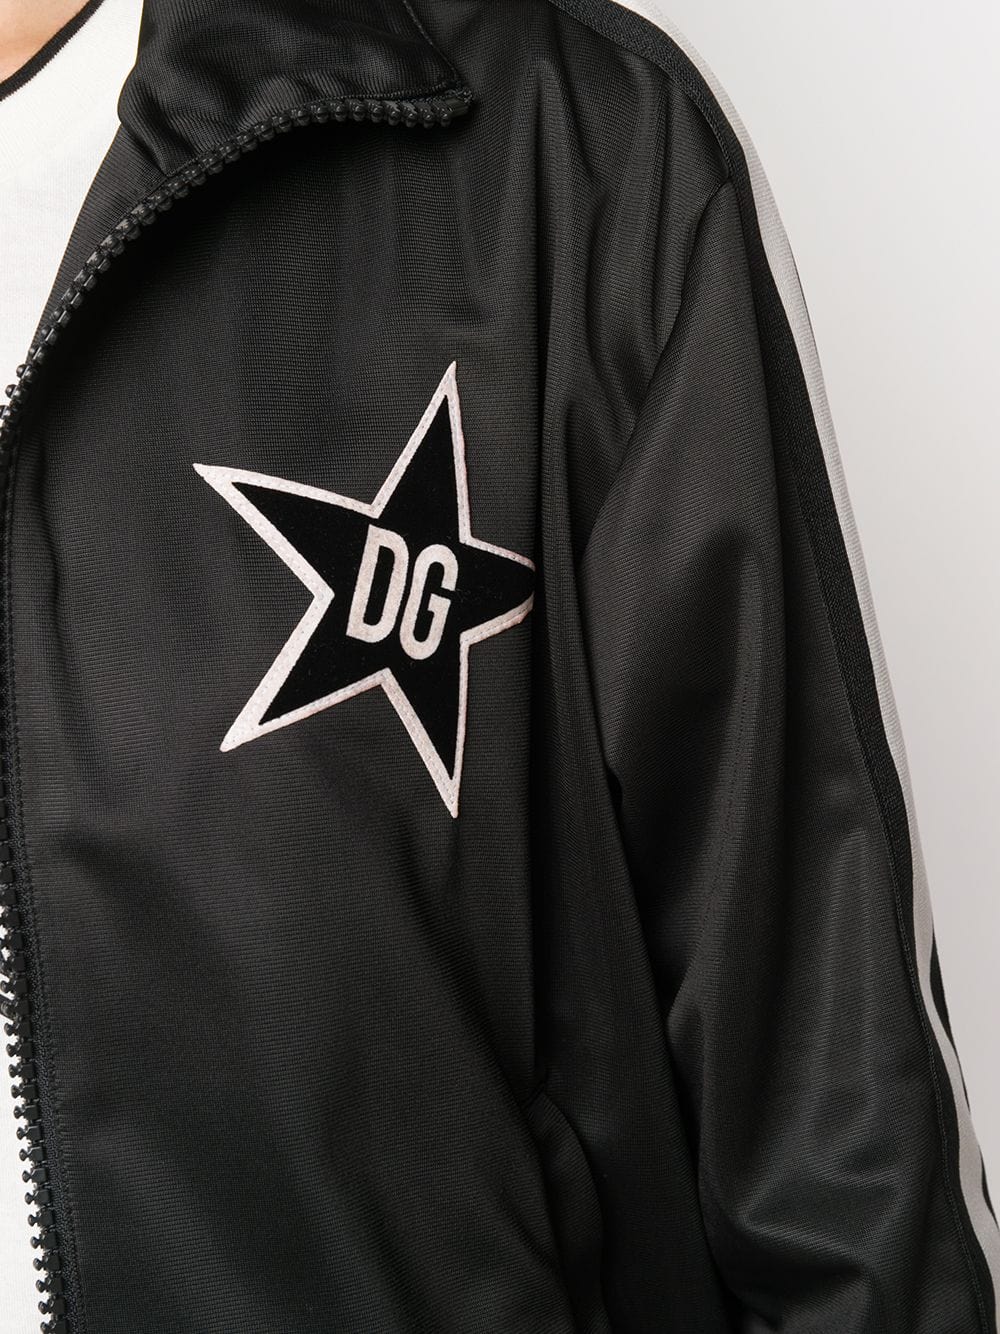 Dolce & Gabbana DG Queen Bomber Jacket